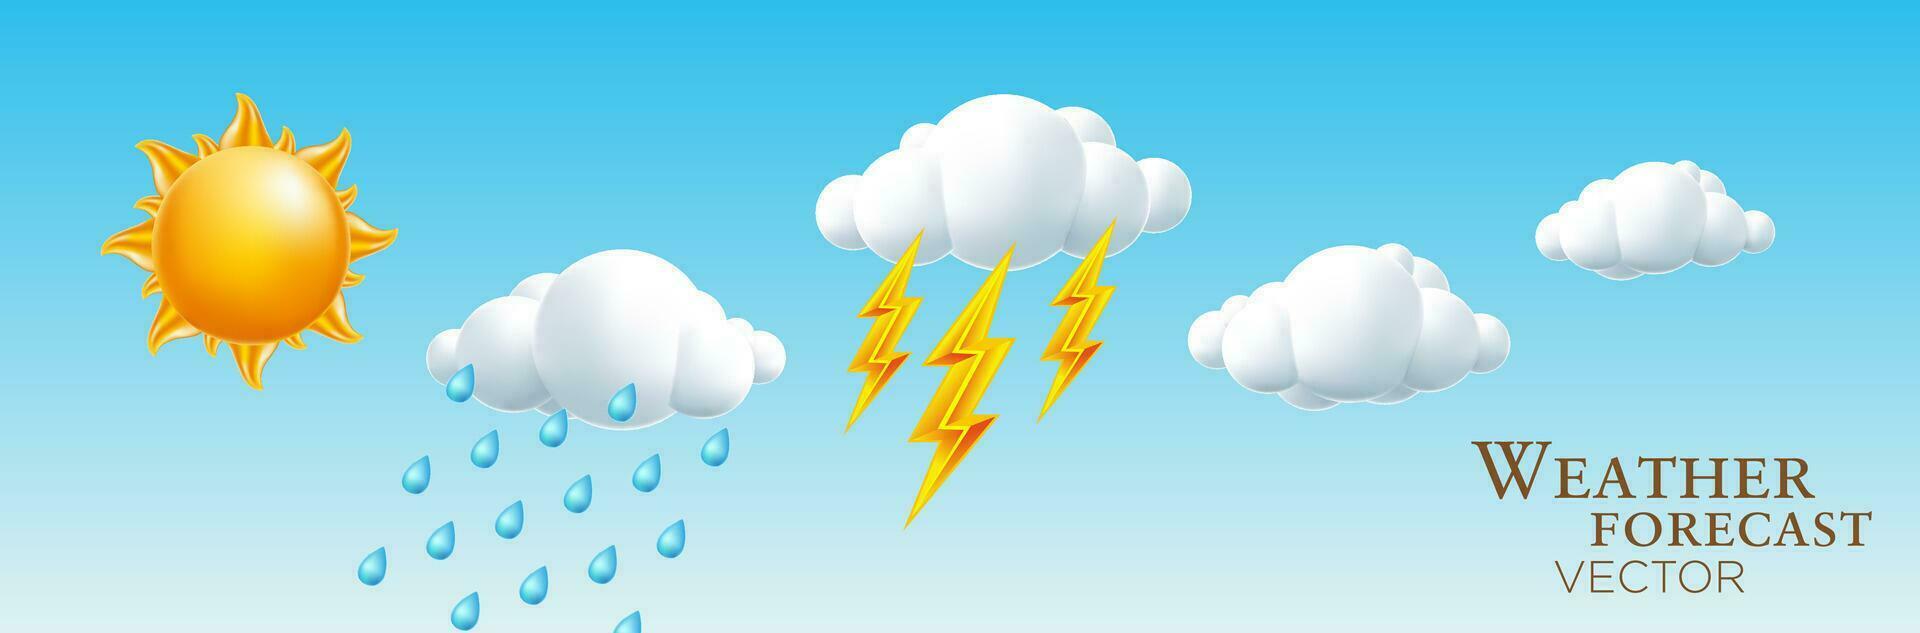 väder, Sol, moln, blixt, regn tecknad serie vektor